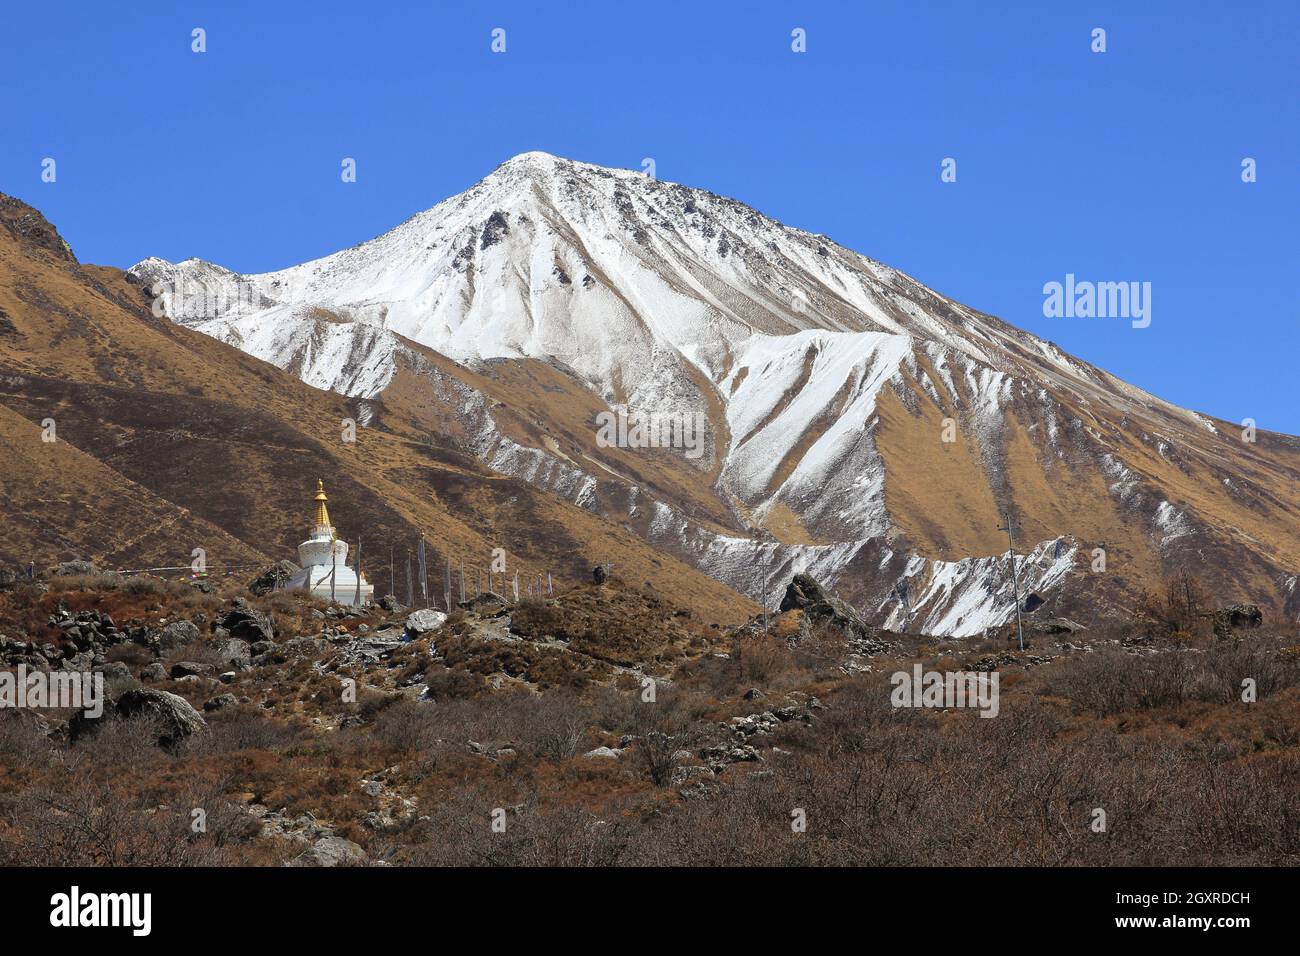 Montare Tserko Ri e piccolo stupa. La molla in scena la Langtang valley. Foto Stock